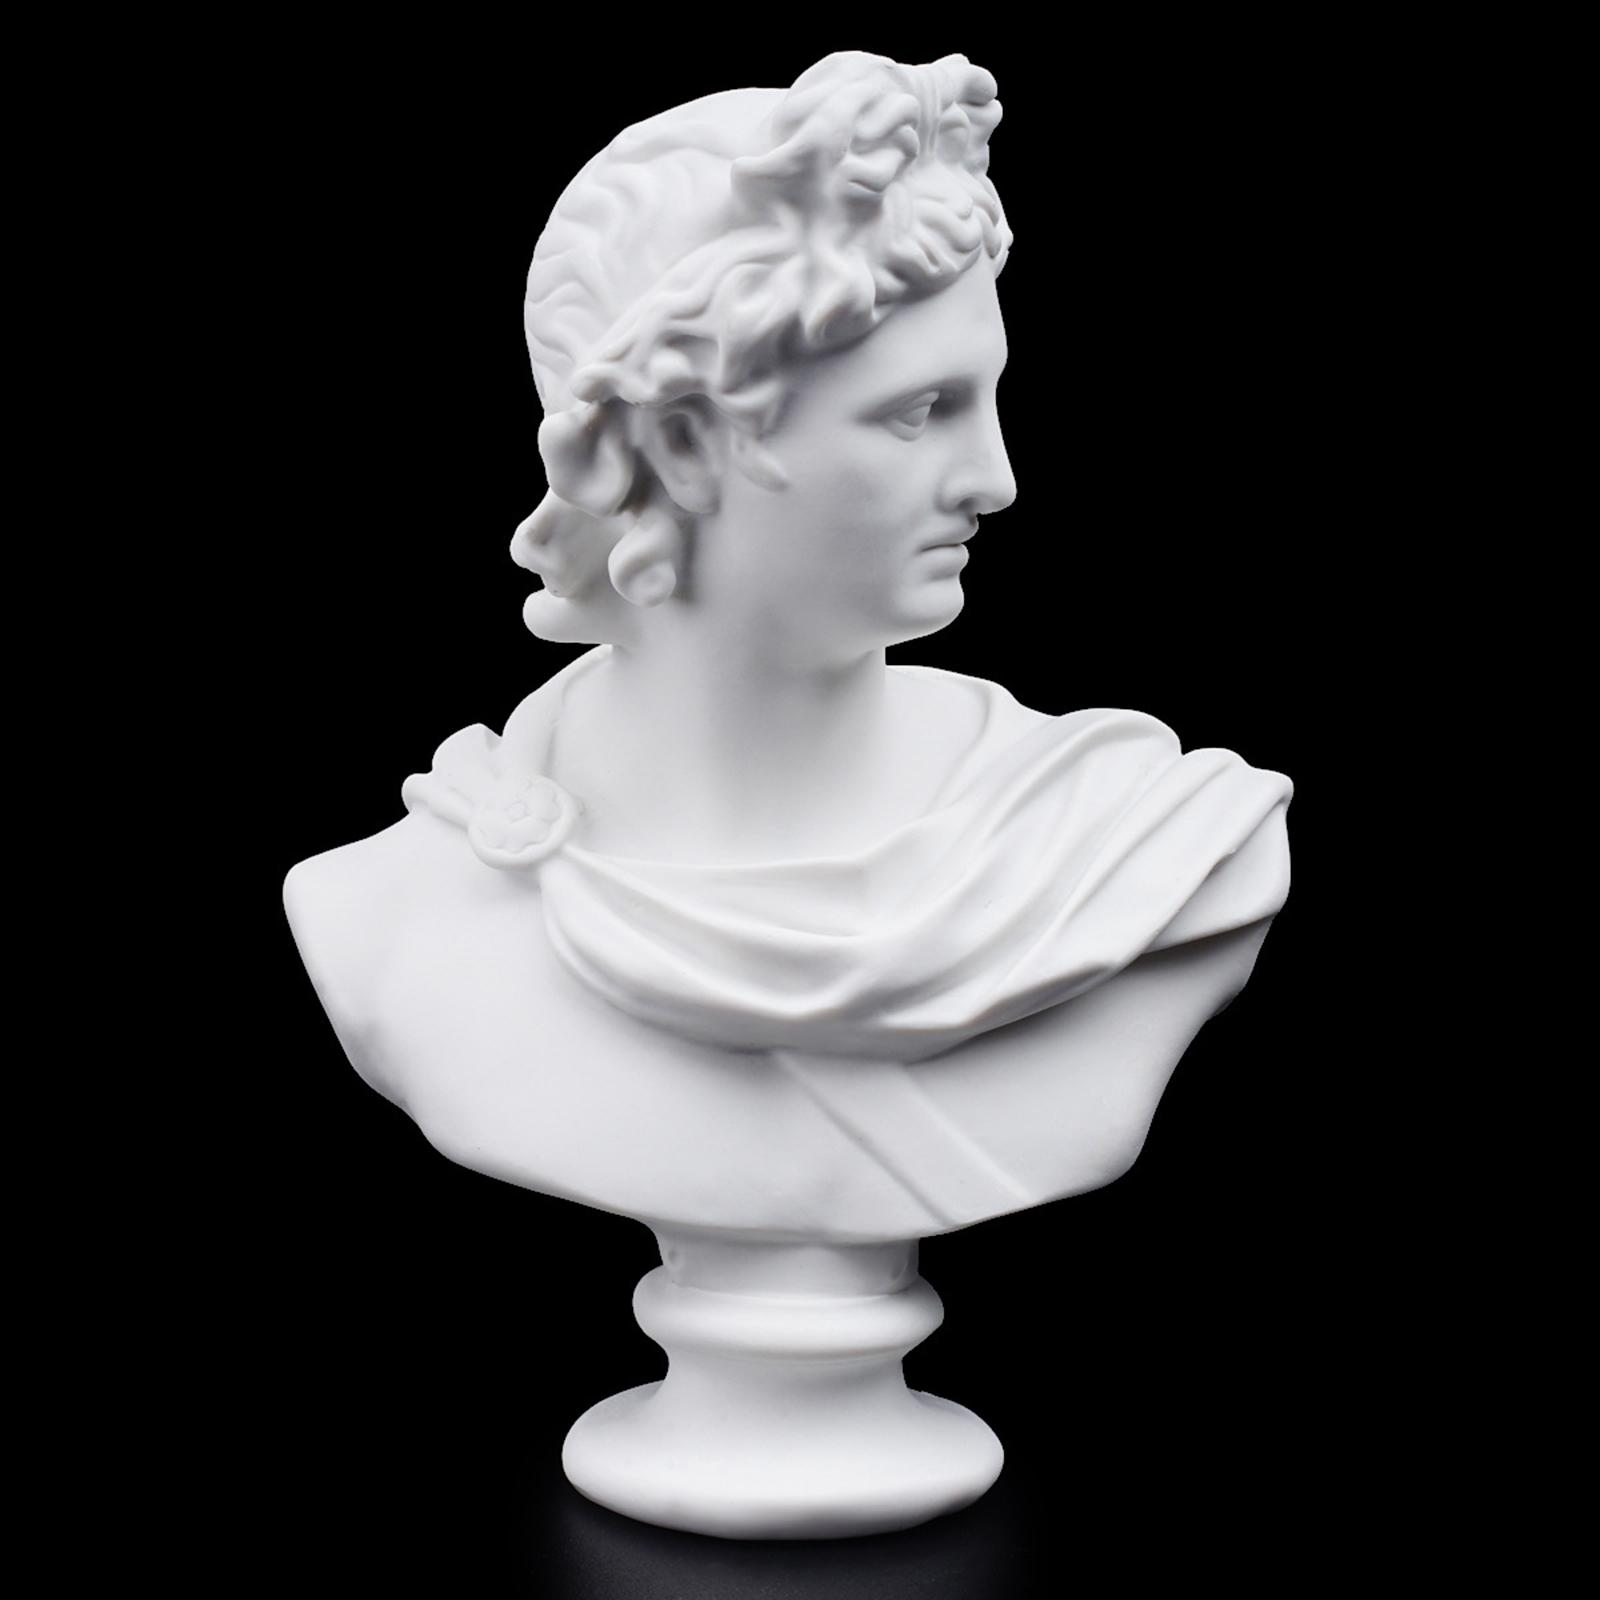 Greek Apollo Statue Replica Mini Portraits Figurine Sculpture Art Handicraft